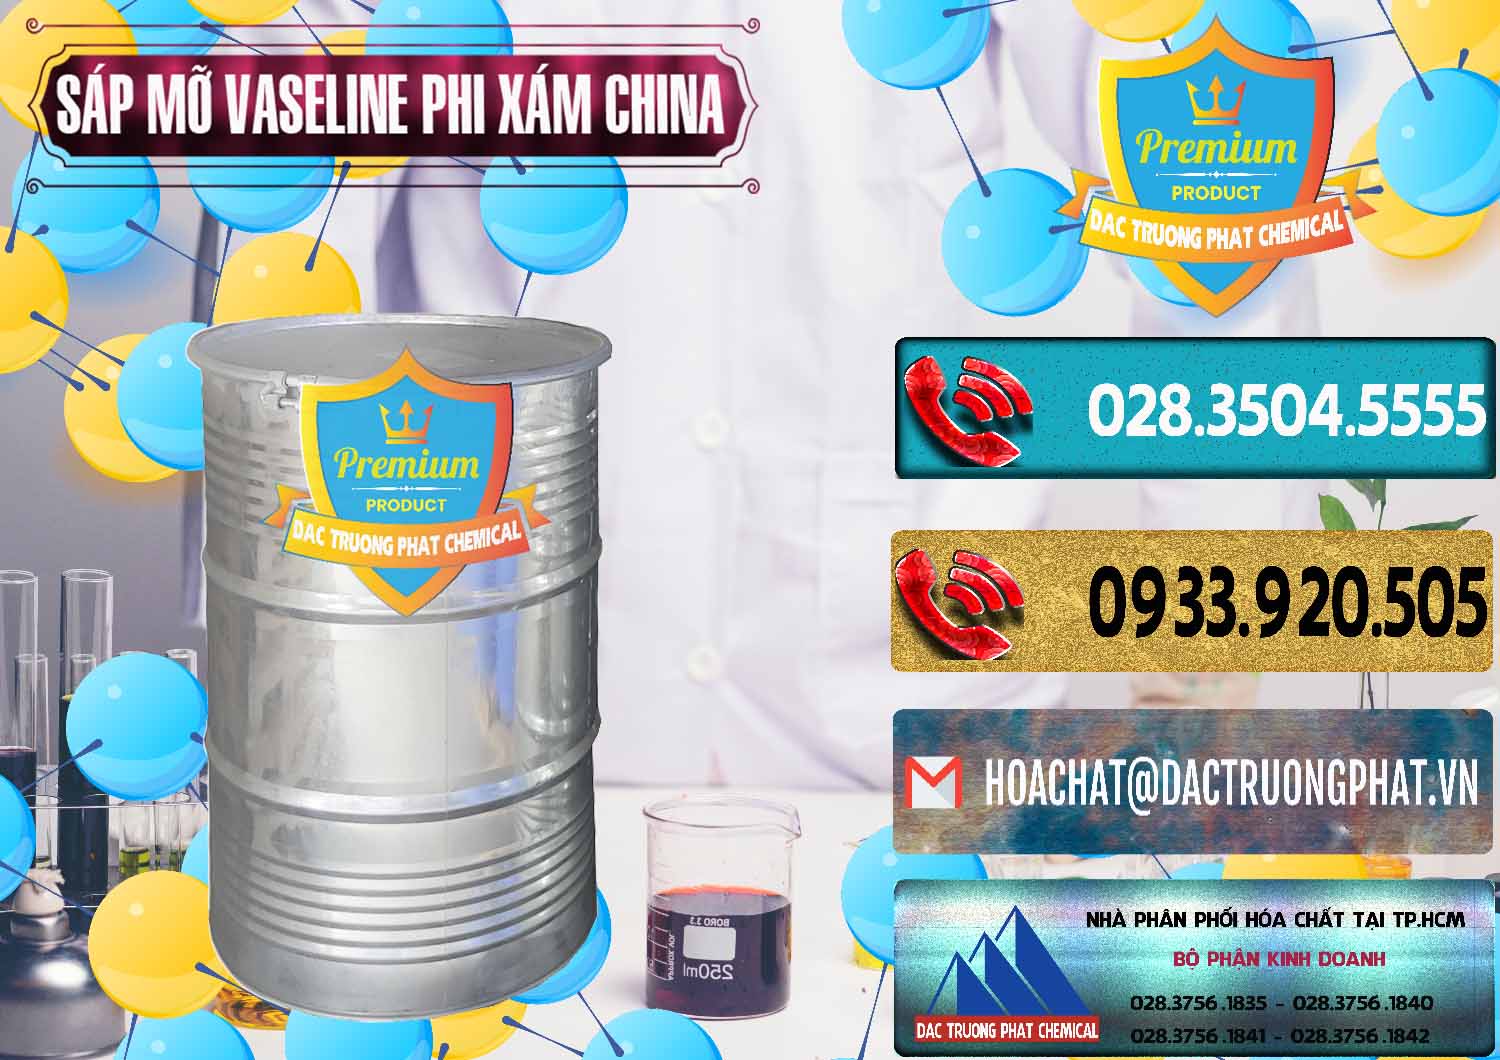 Cty chuyên nhập khẩu _ bán Sáp Mỡ Vaseline Phi Xám Trung Quốc China - 0291 - Nhà cung cấp _ phân phối hóa chất tại TP.HCM - hoachatdetnhuom.com